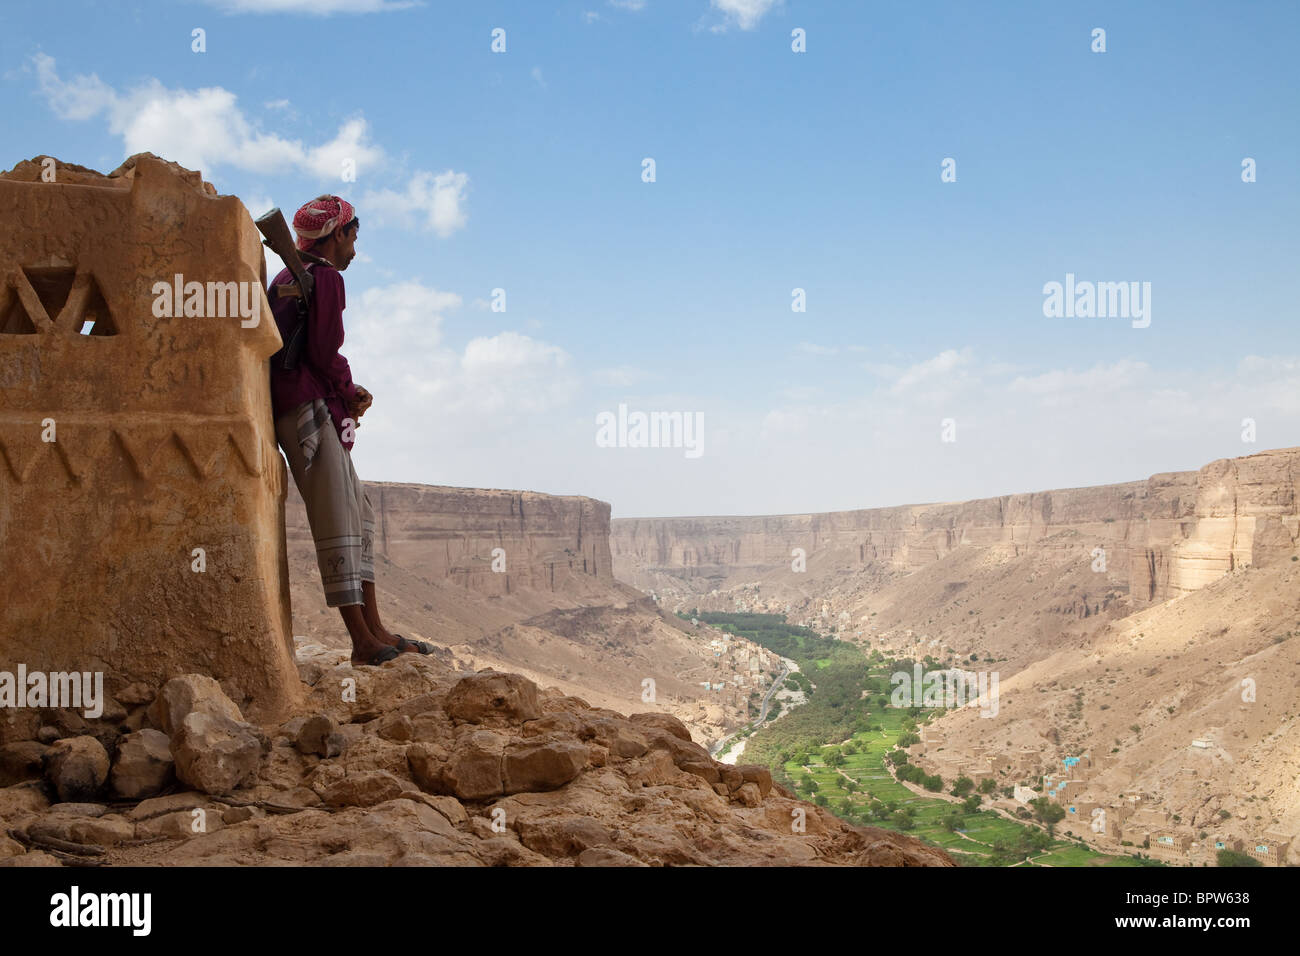 Yemeni man with AK-47 standing overlooking Wadi Do'an, Hadramaut, Yemen Stock Photo